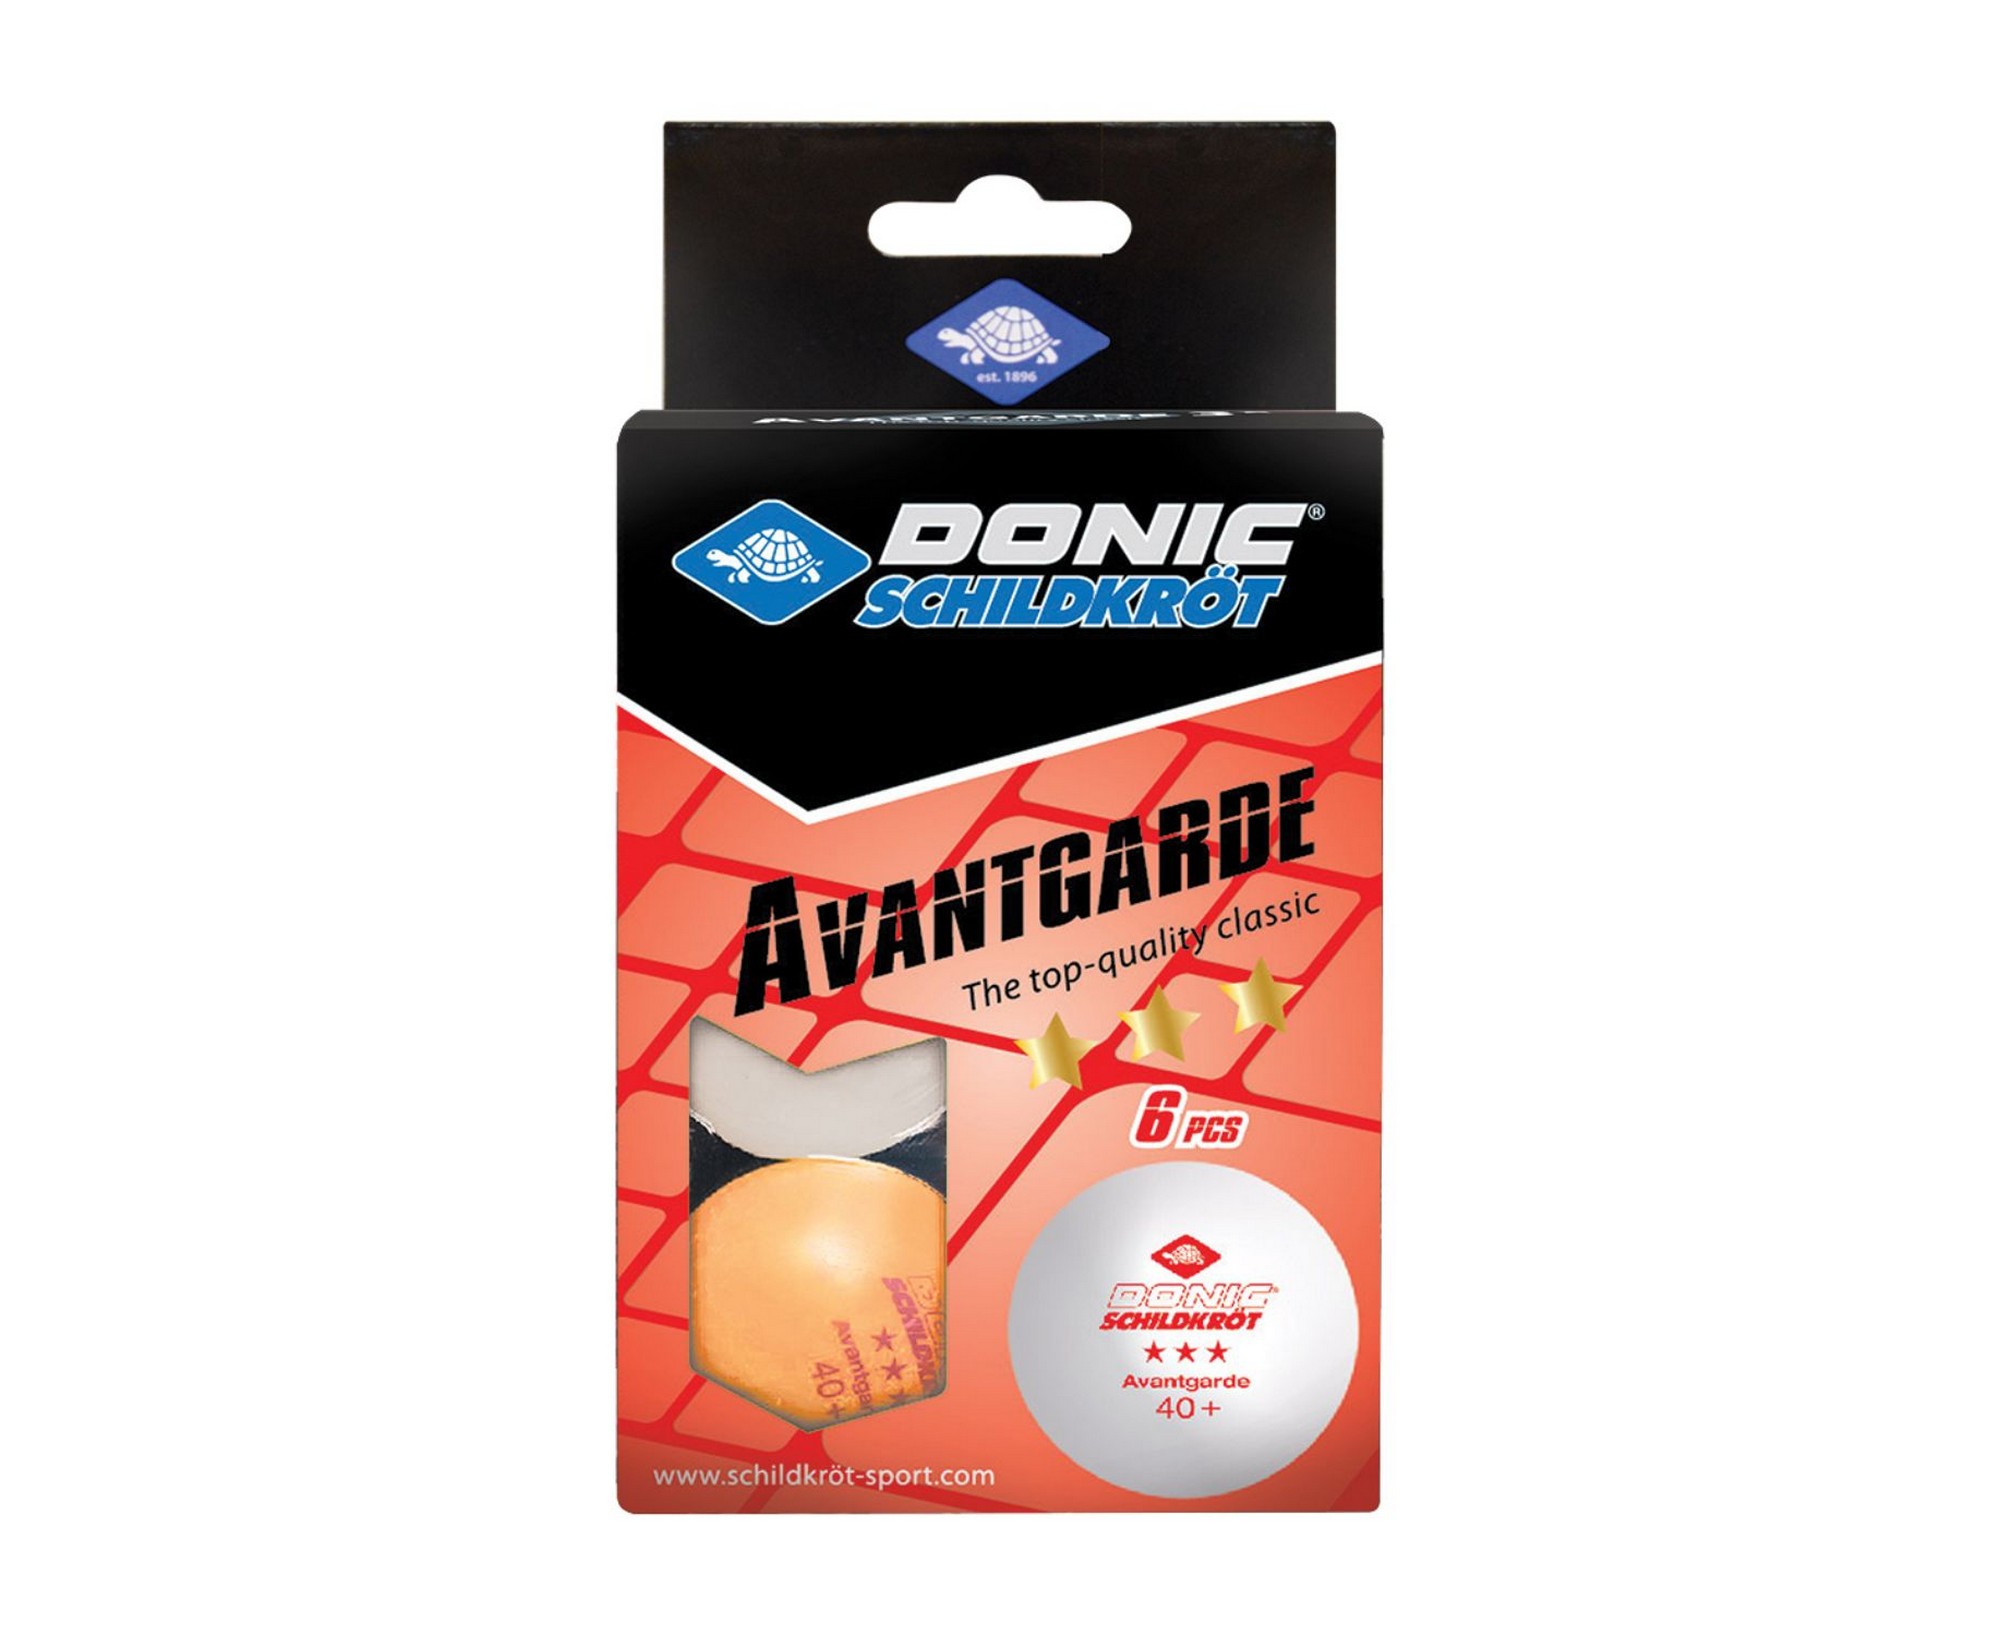 Мячики для настольного тенниса Donic Avantgarde 3* 40+, 6 штук 608533 белый + оранжевый - фото 1